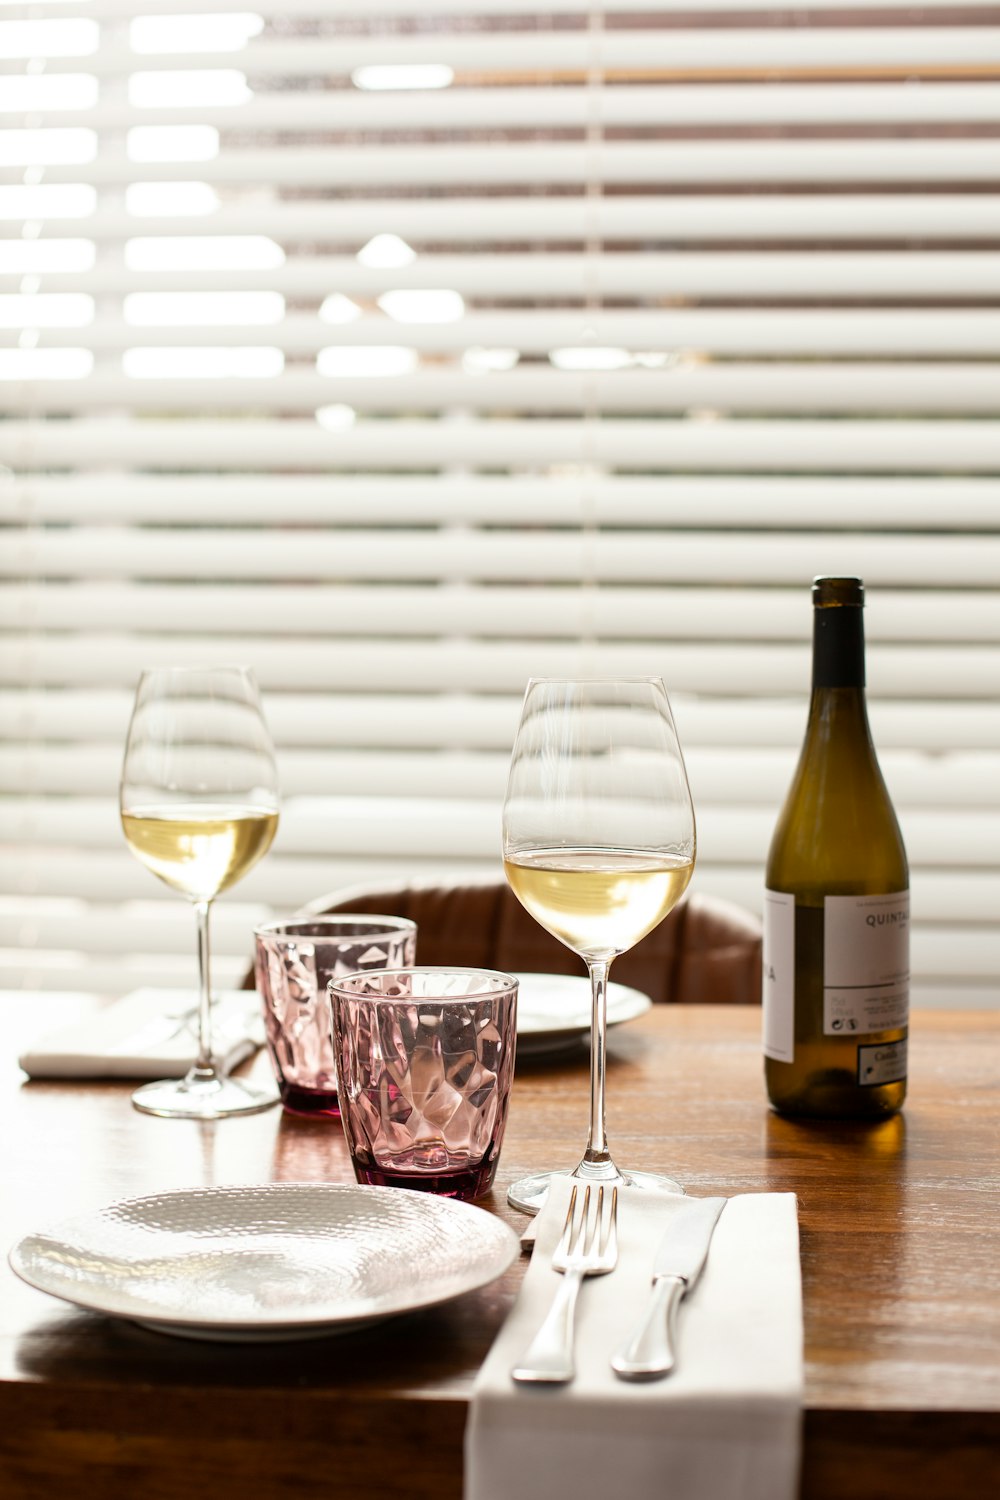 clear wine glass beside wine bottle on table